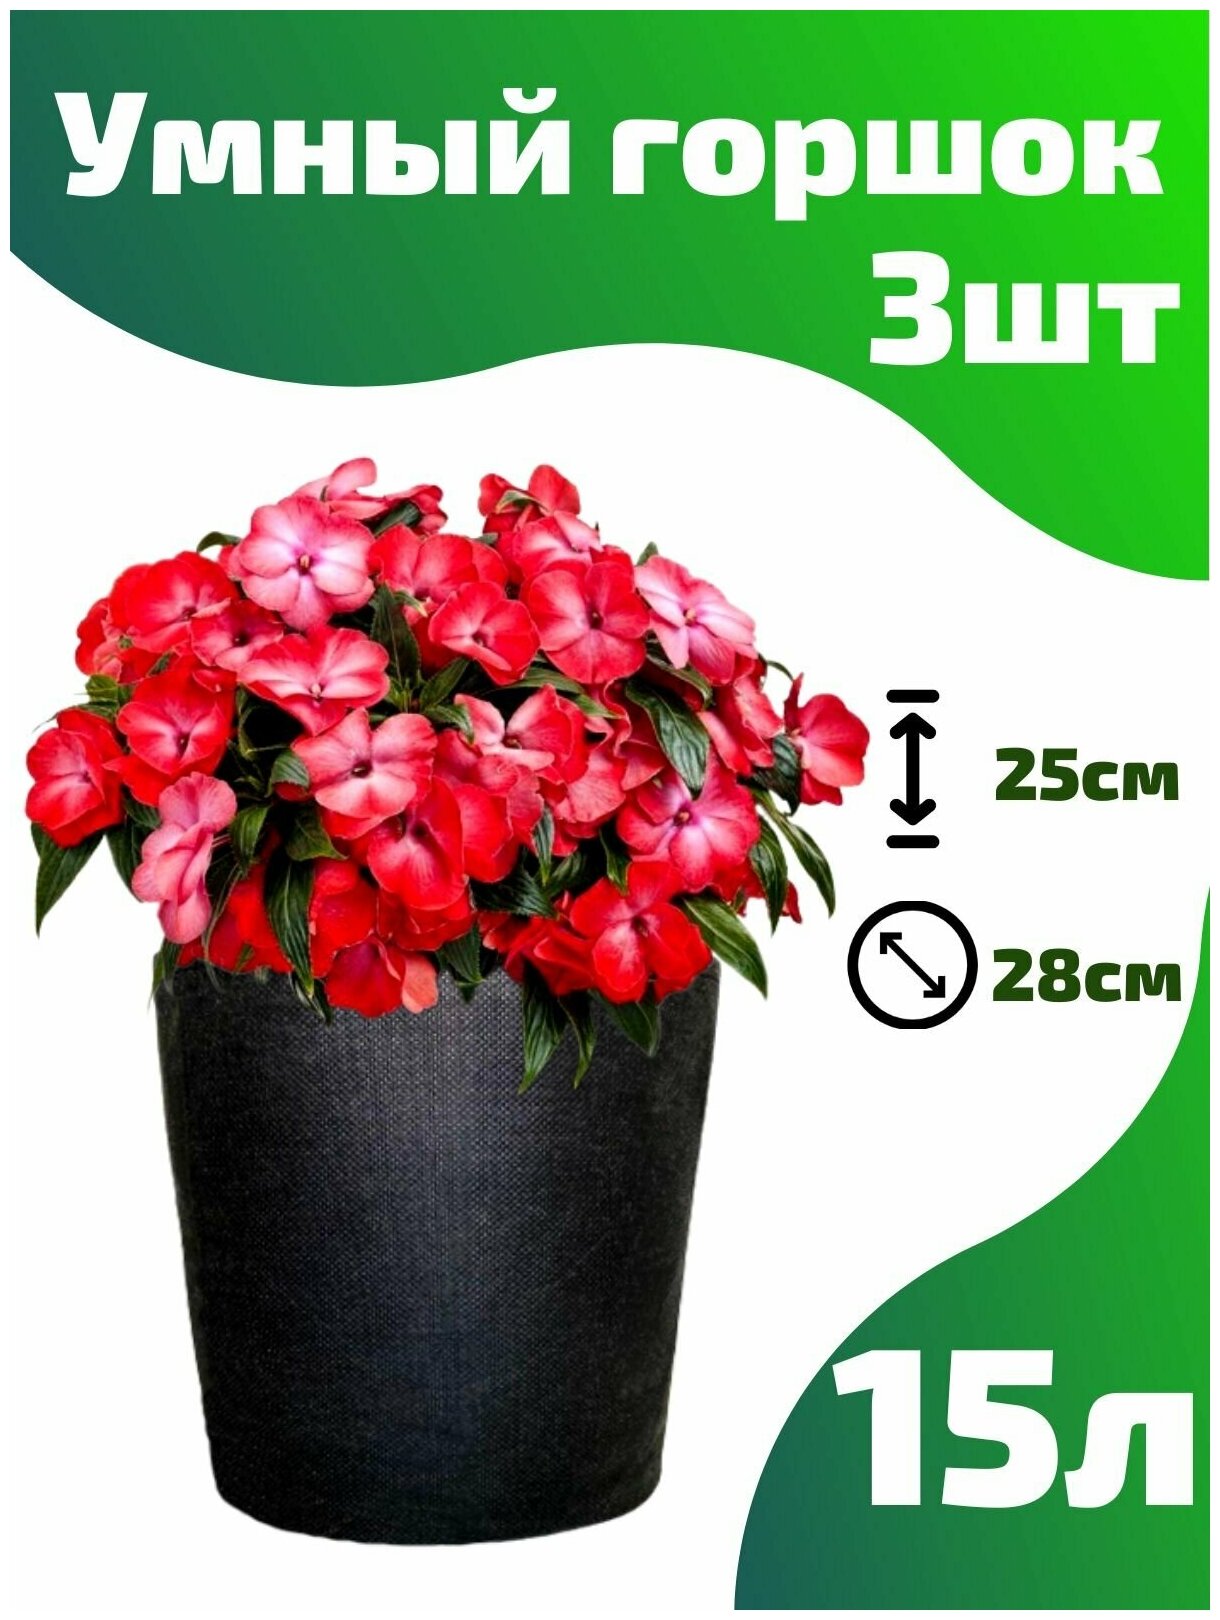 Горшок текстильный для рассады, растений, цветов Smart Pot - 15 л 3 шт.